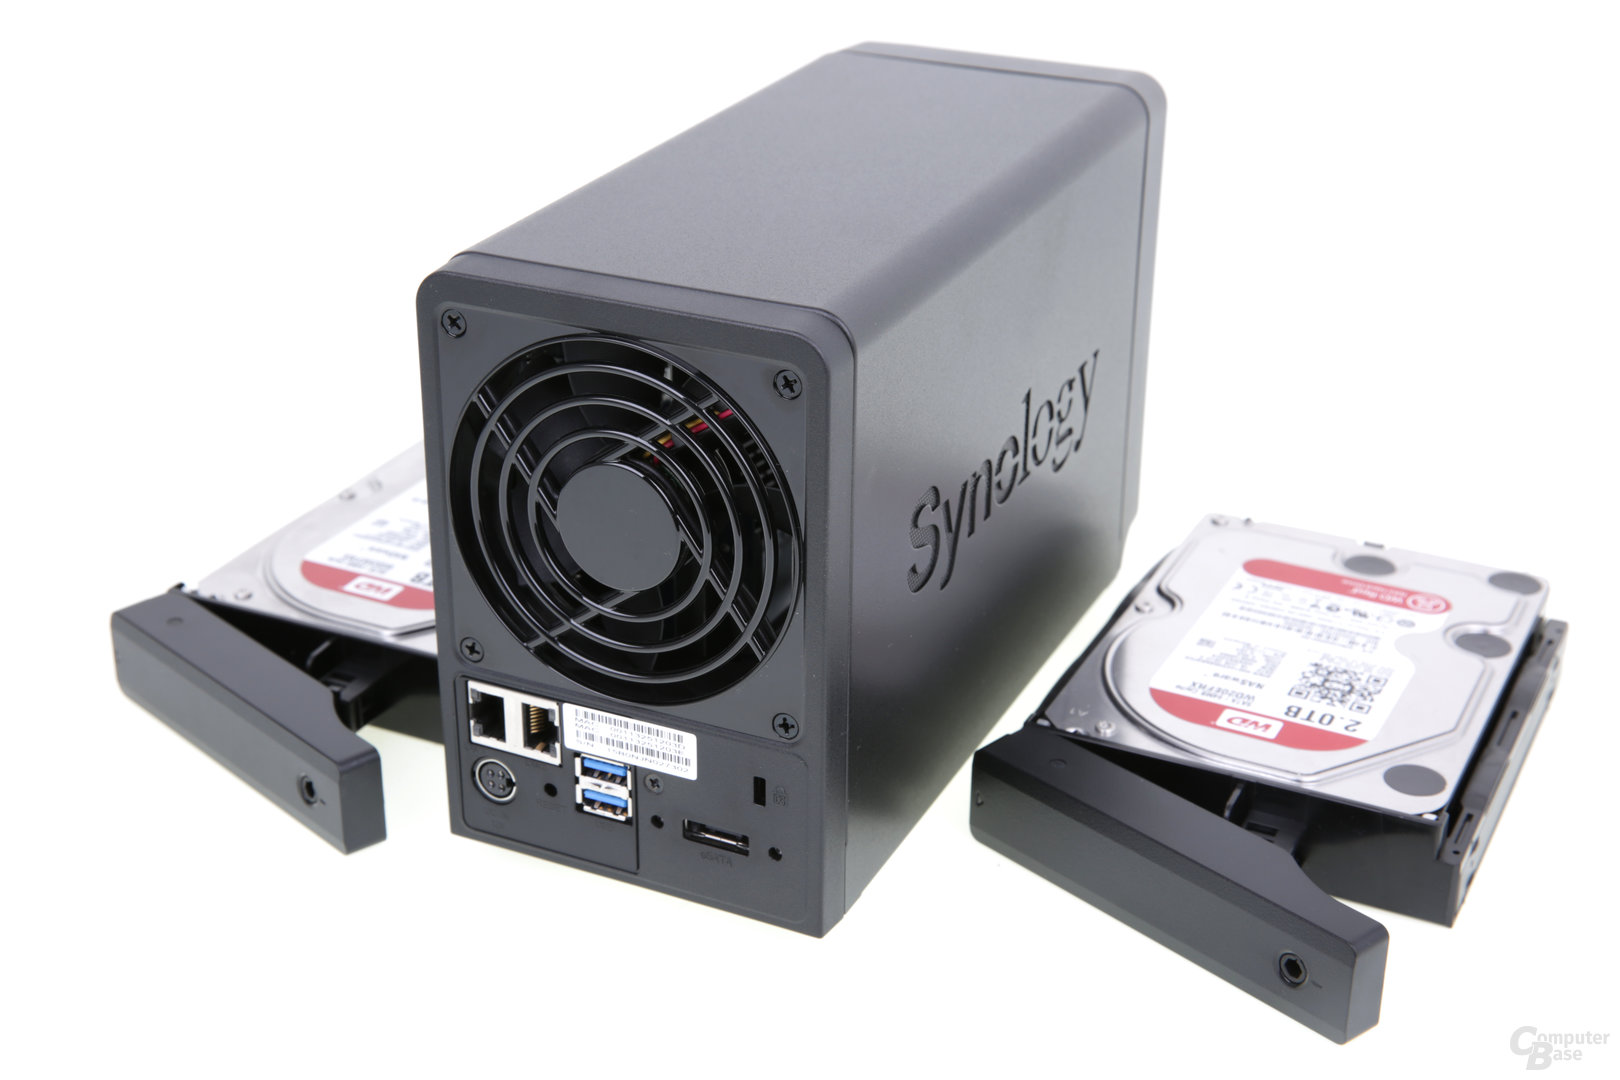 Synology DS716+ – Rückseite mit LAN, eSATA und USB 3.0